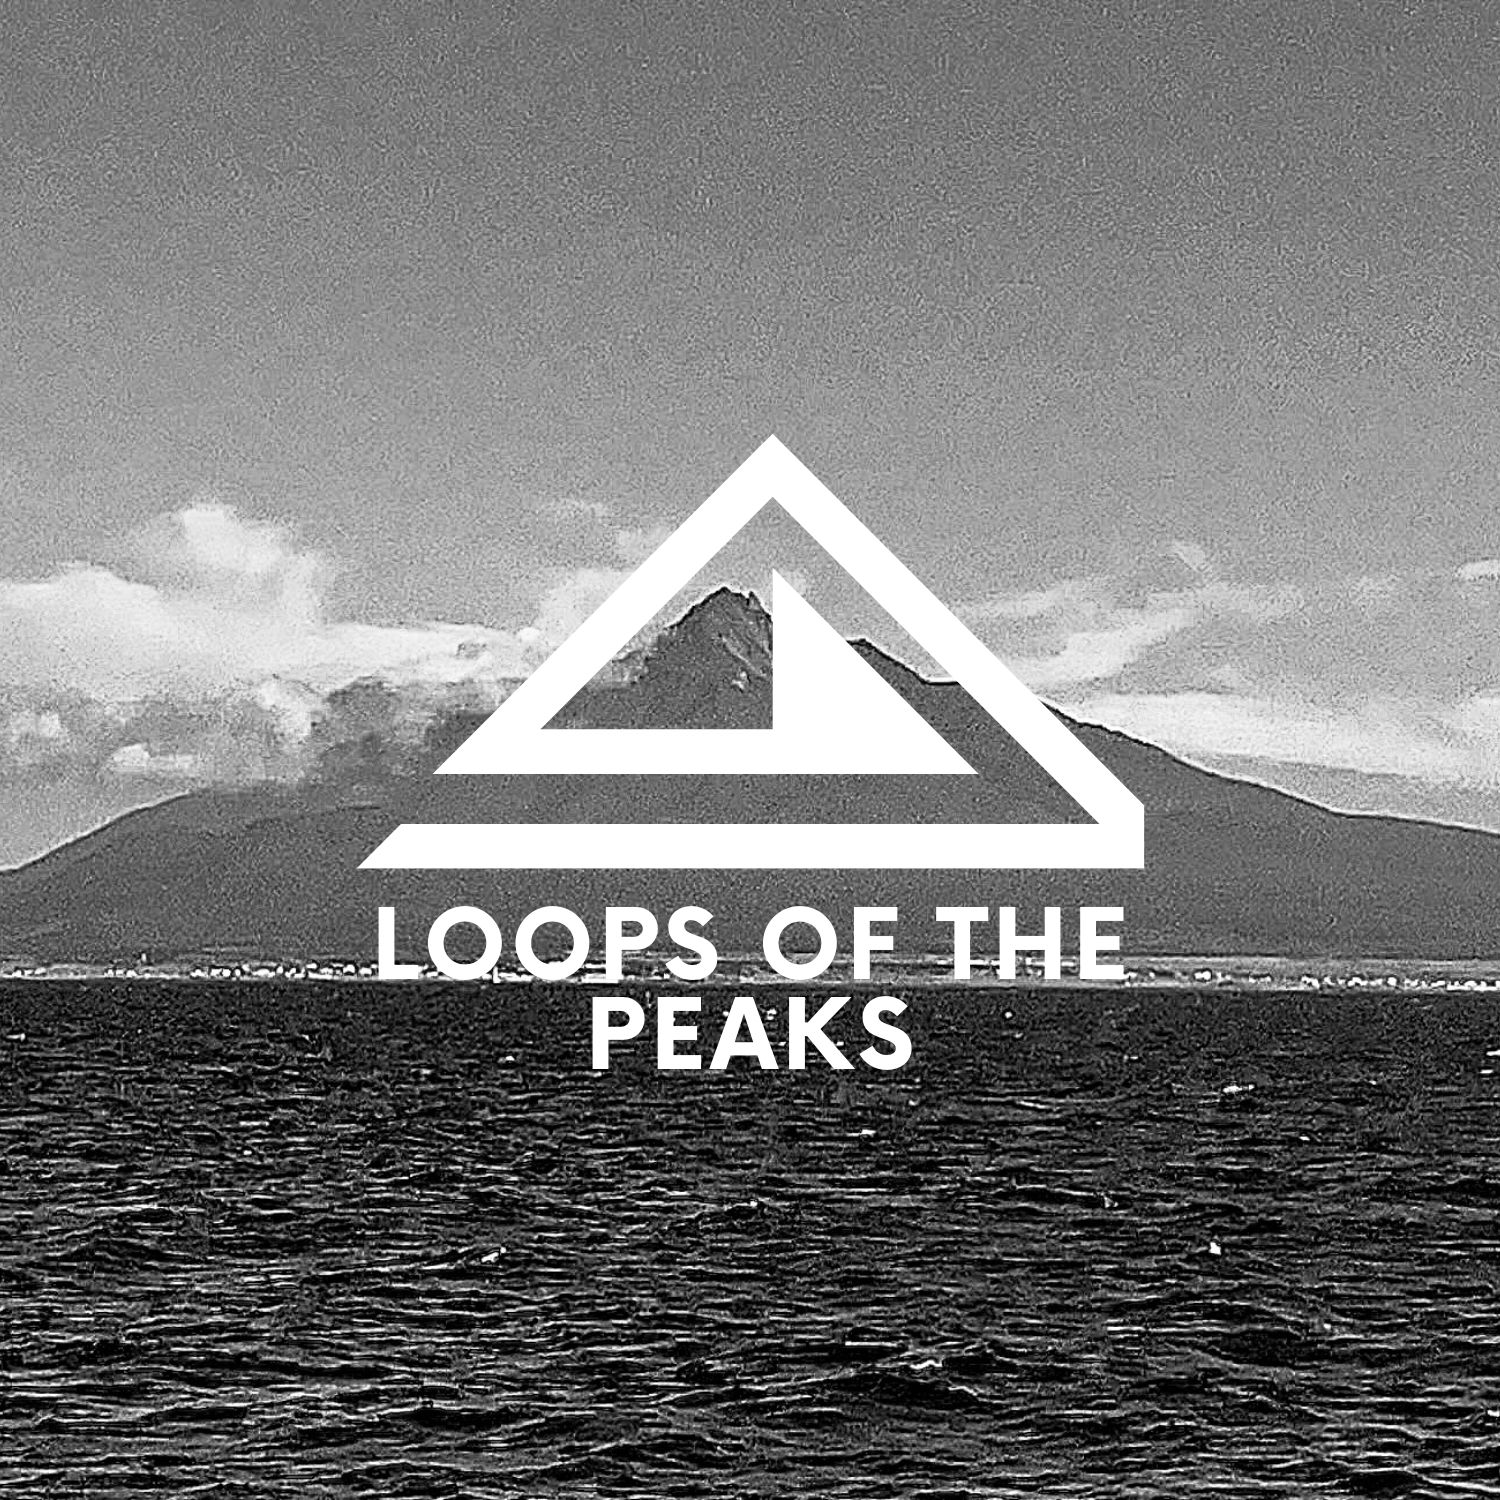 Loops of the peaks